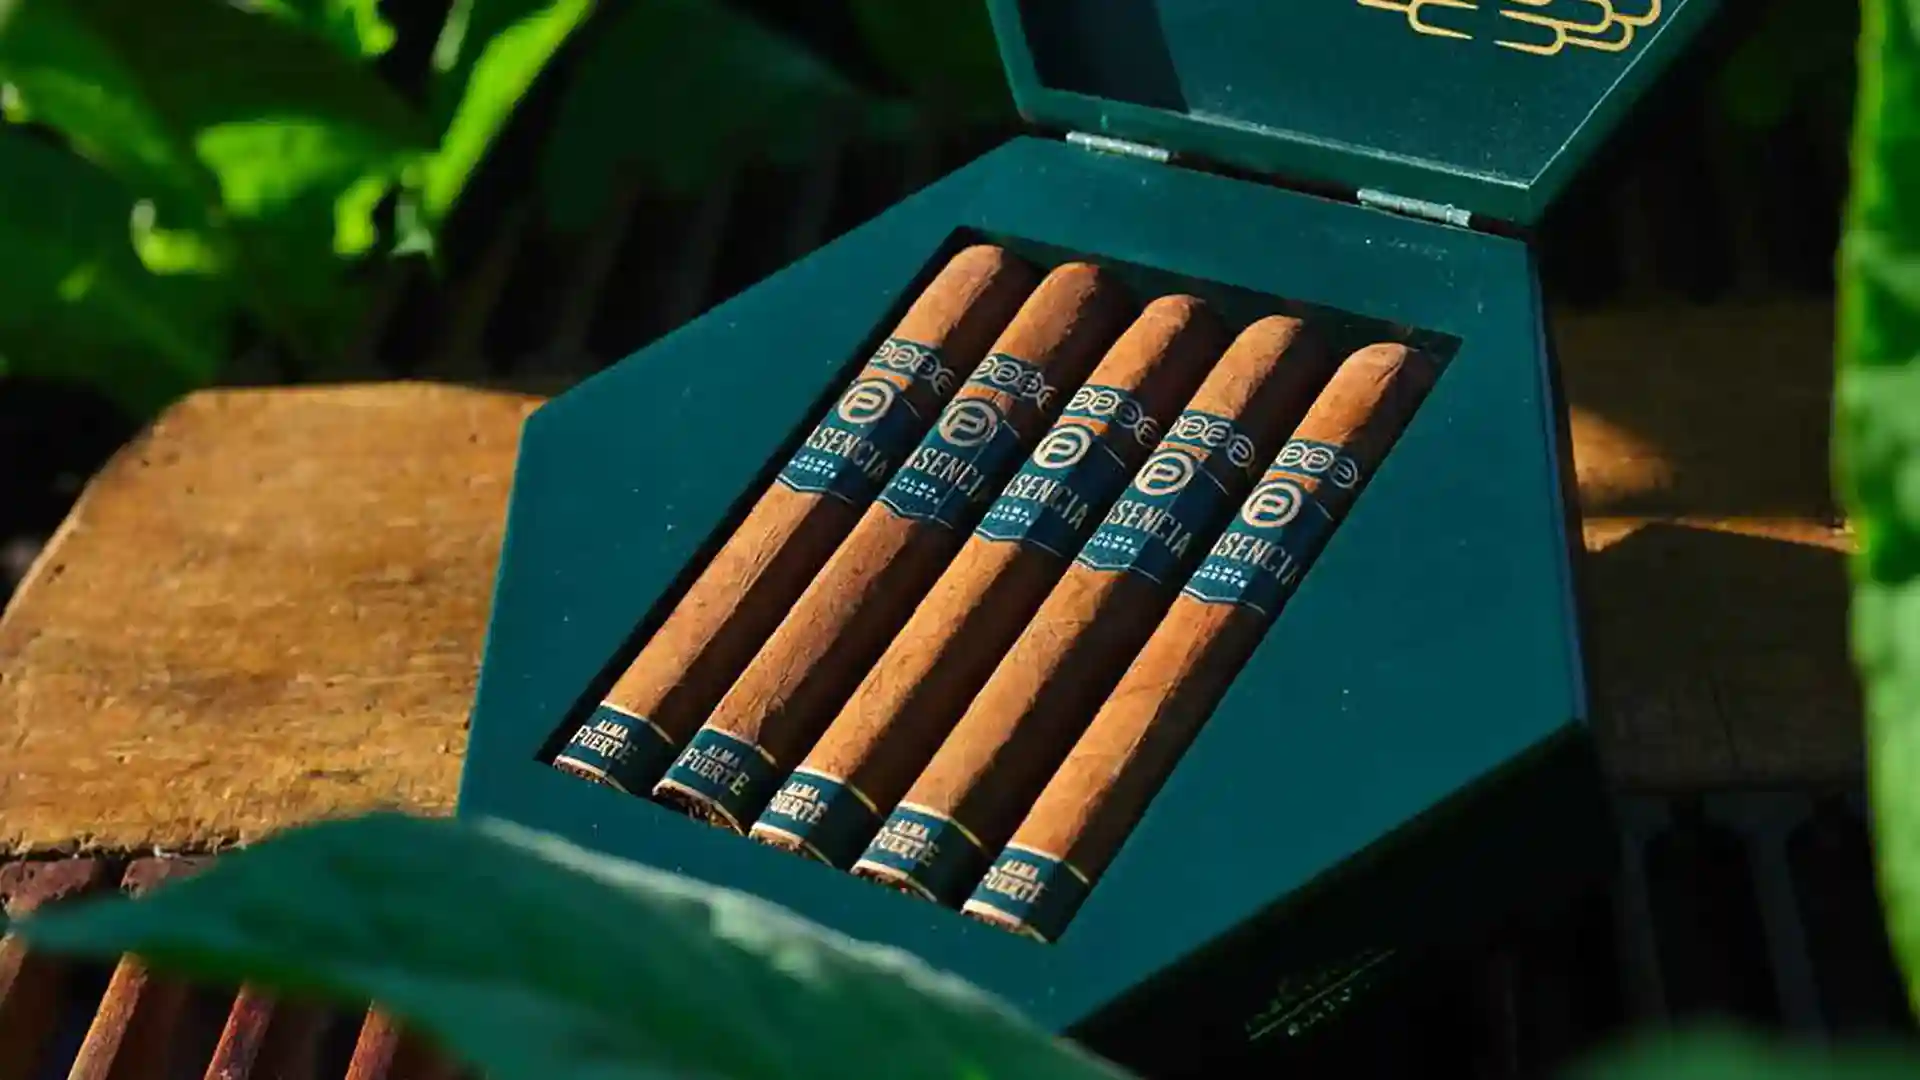 zigarren online kaufen, premium zigarren, original, tradition, authetizität, qualität, aroma, zigarrengenuss